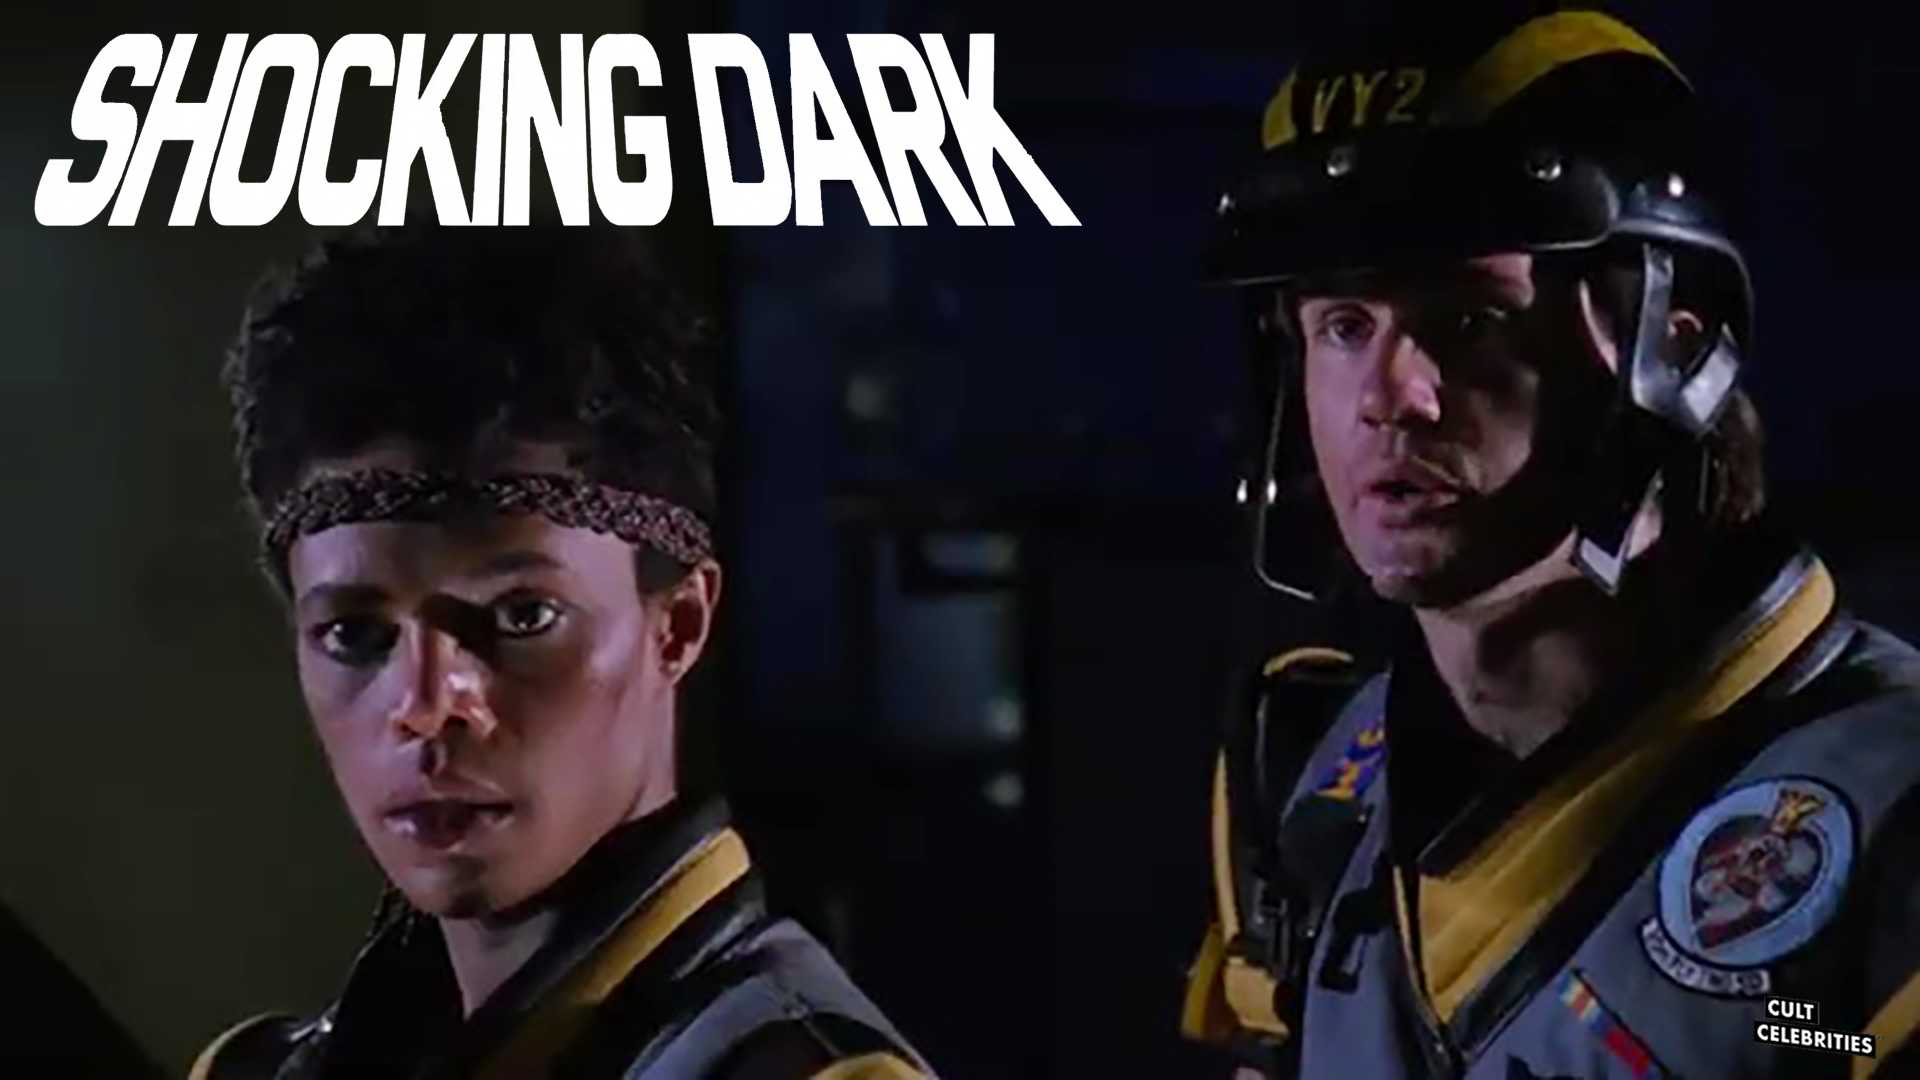 Shocking Dark (1989)